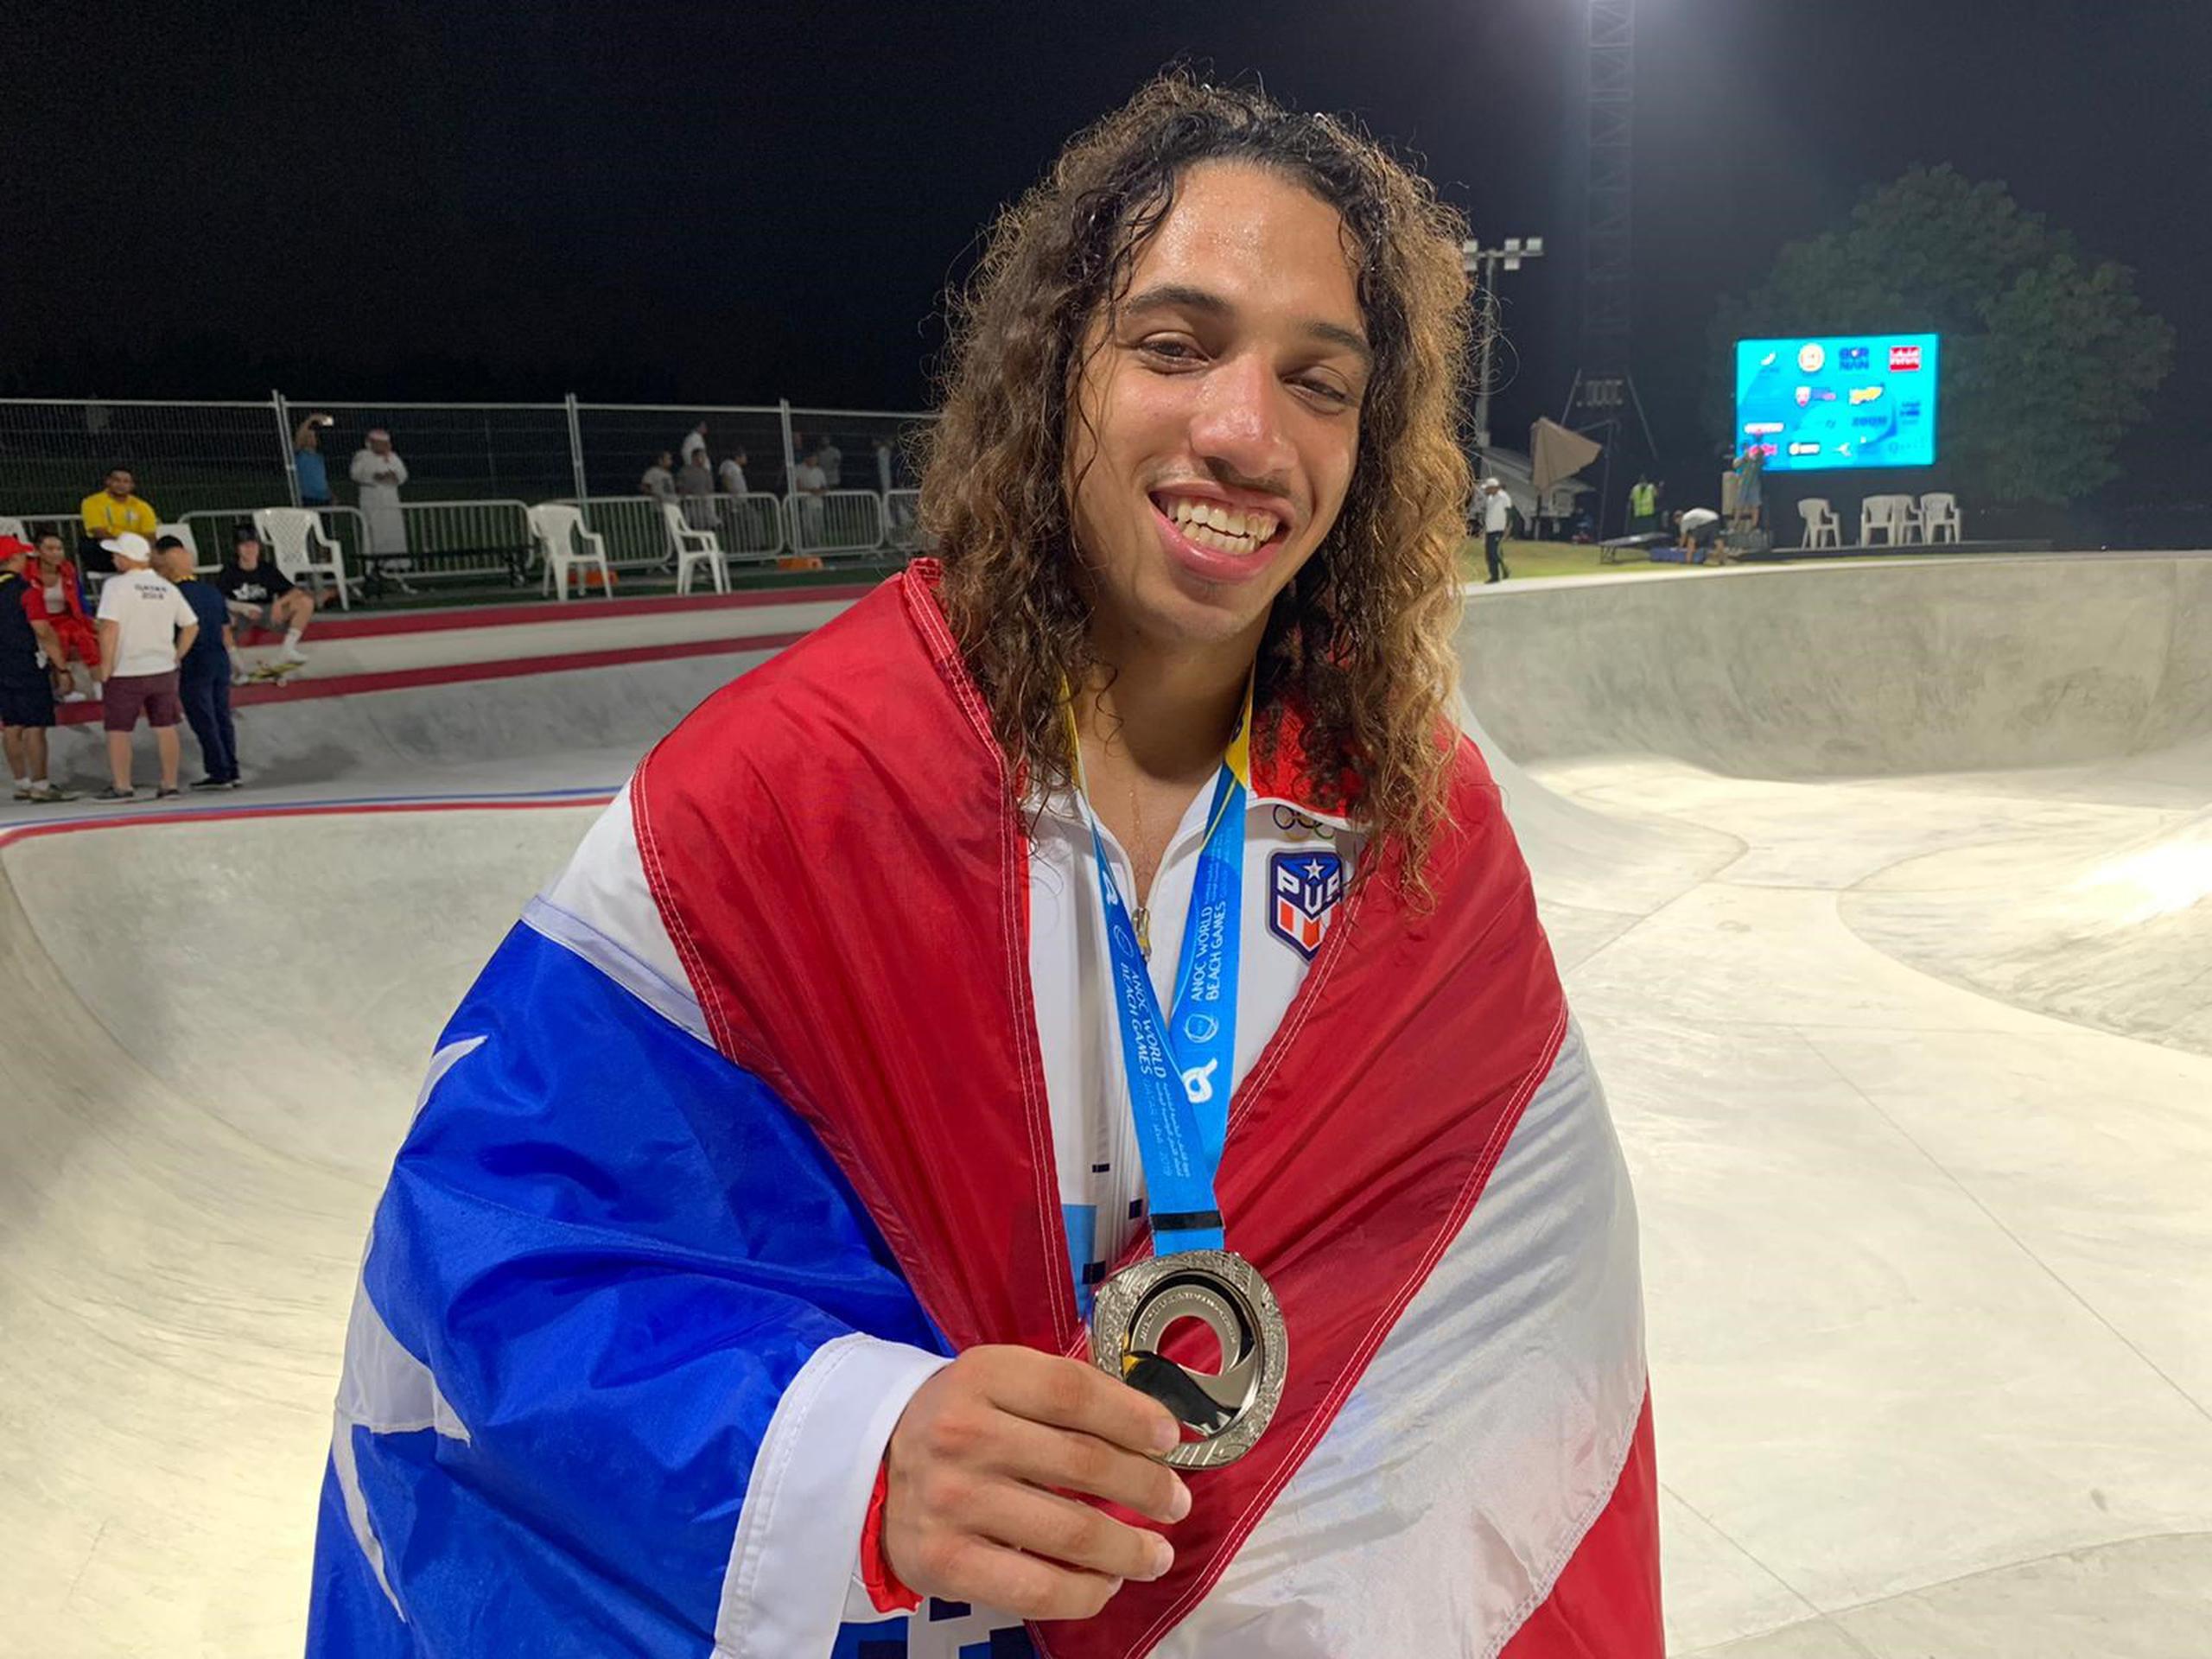 Steven Piñeiro sostiene la medalla de plata que ganó en Doha, Catar. (Suministrada)